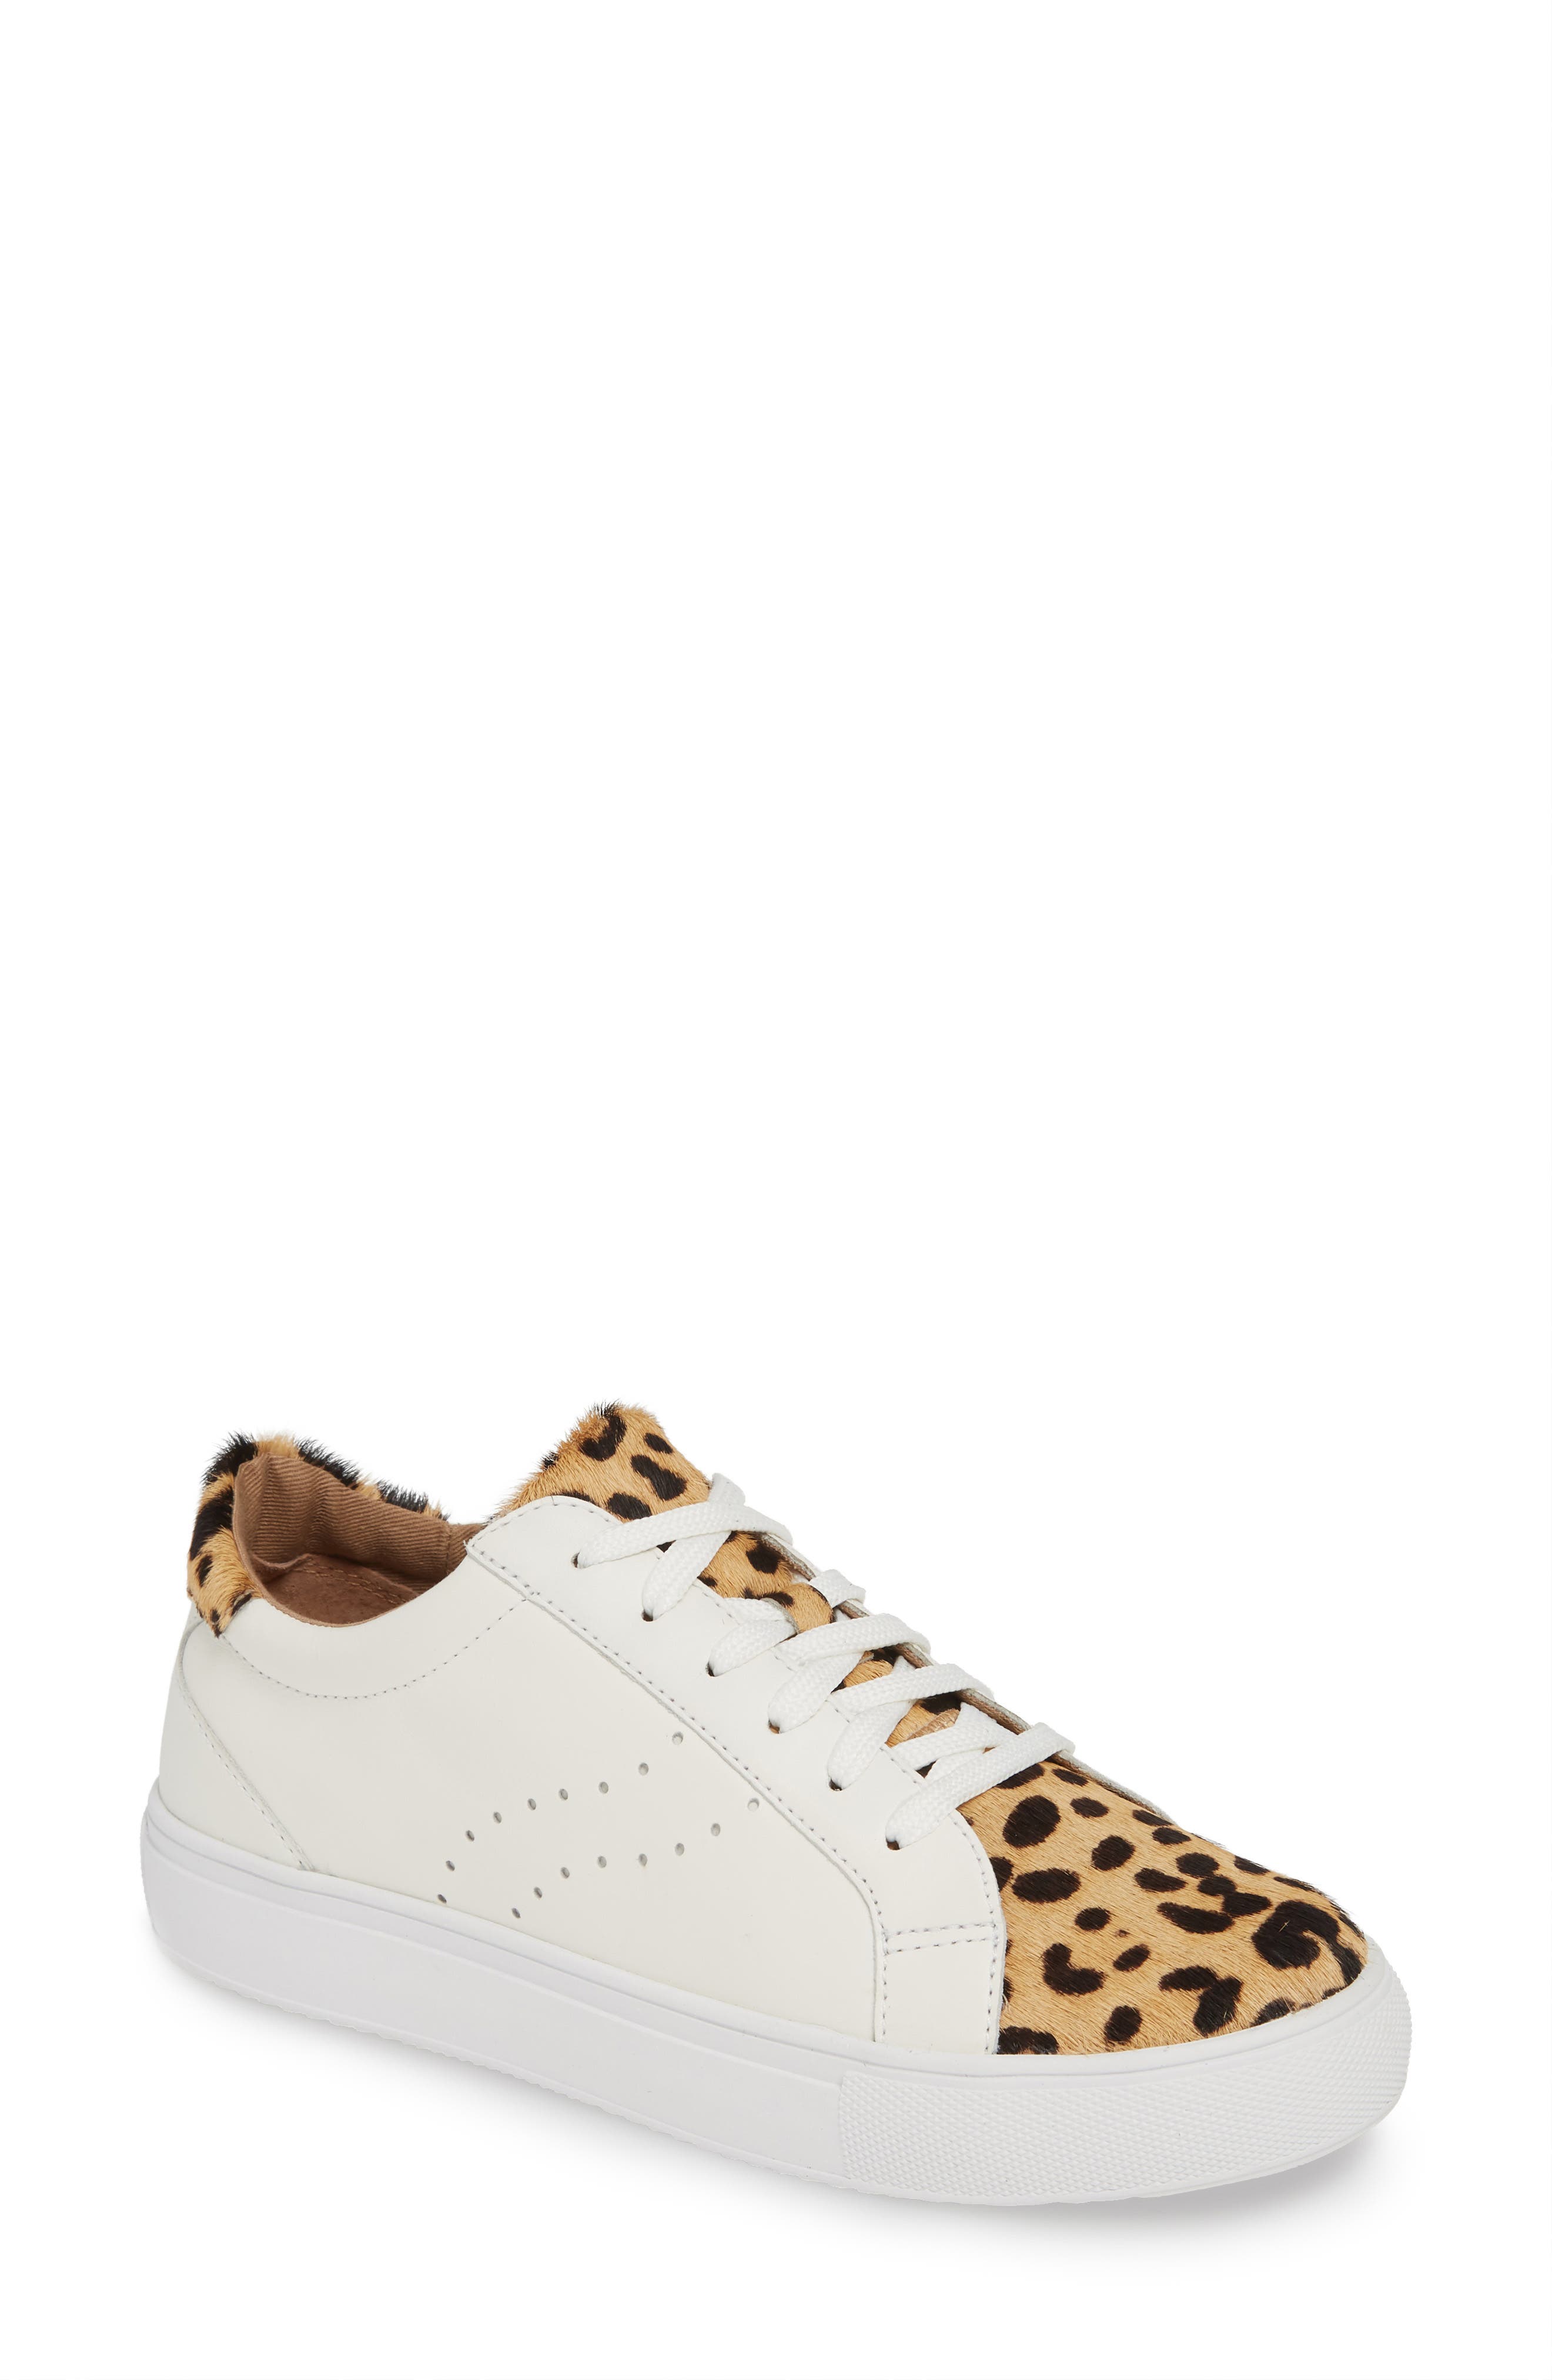 halogen cheetah sneakers